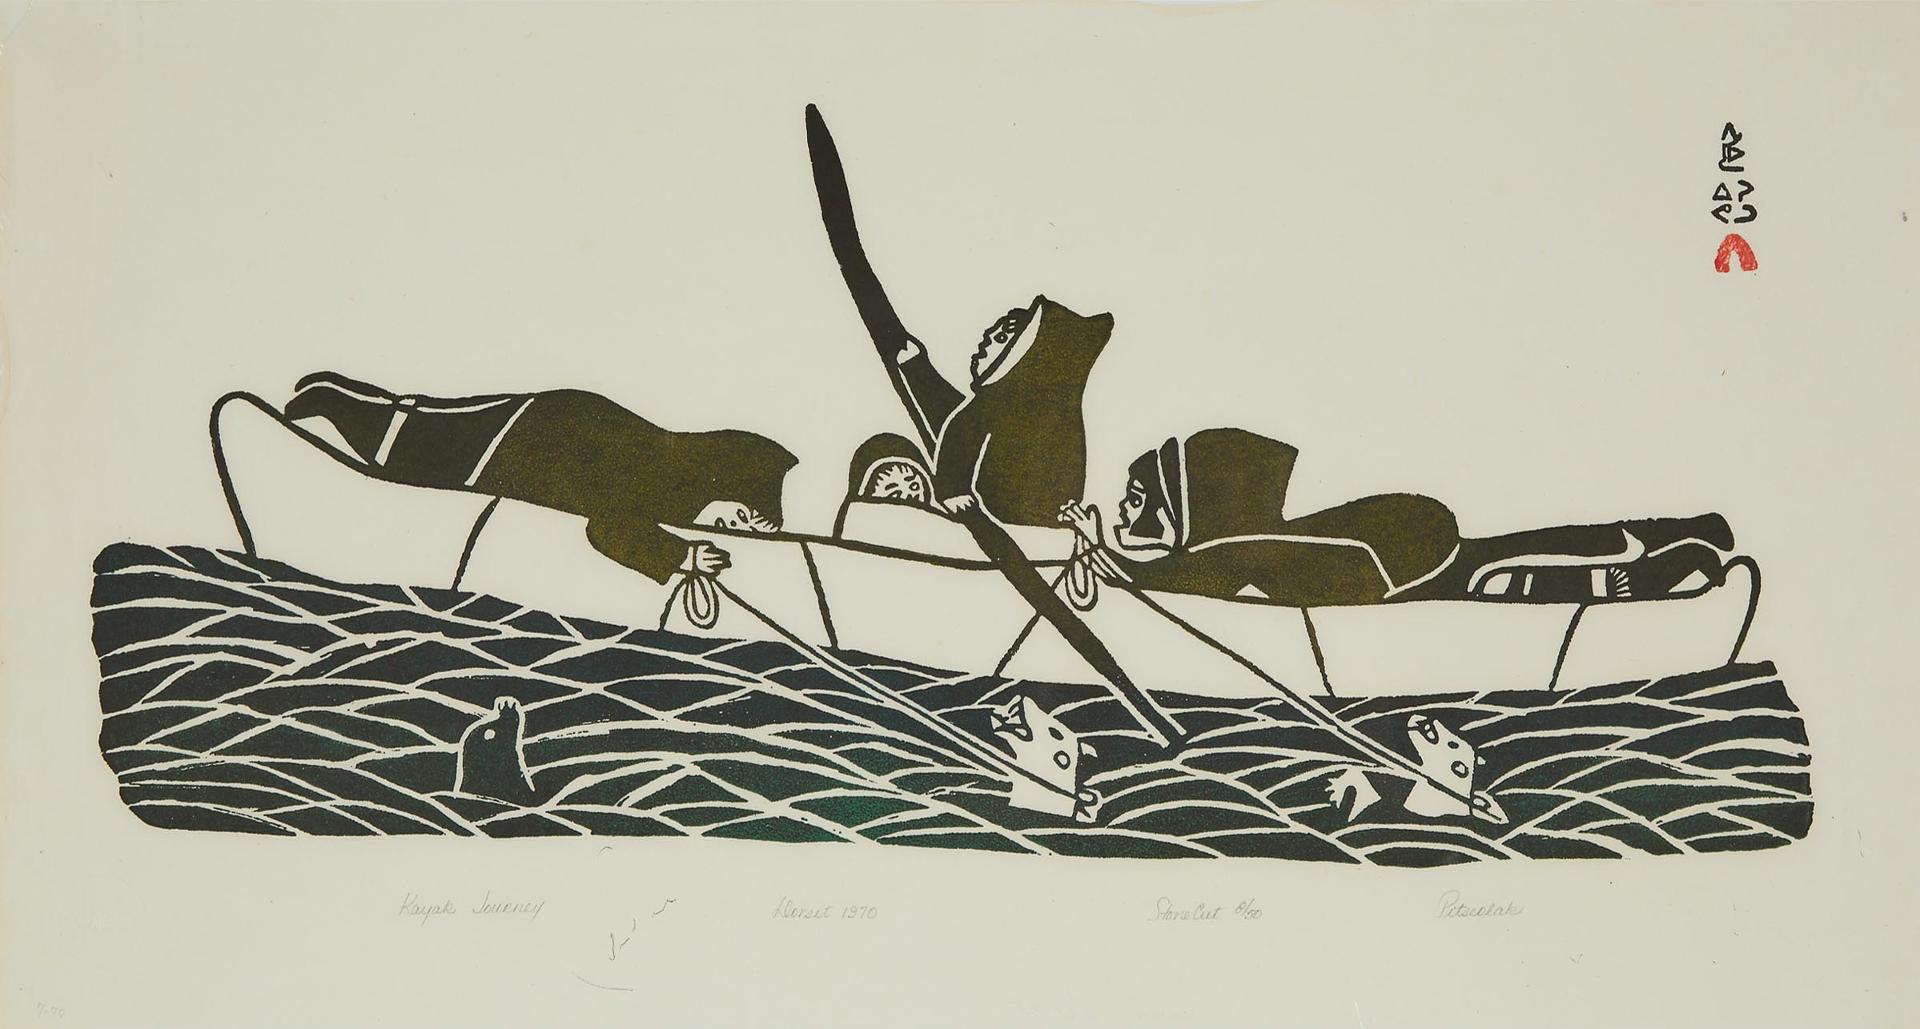 Pitseolak Ashoona (1904-1983) - Kayak Journey